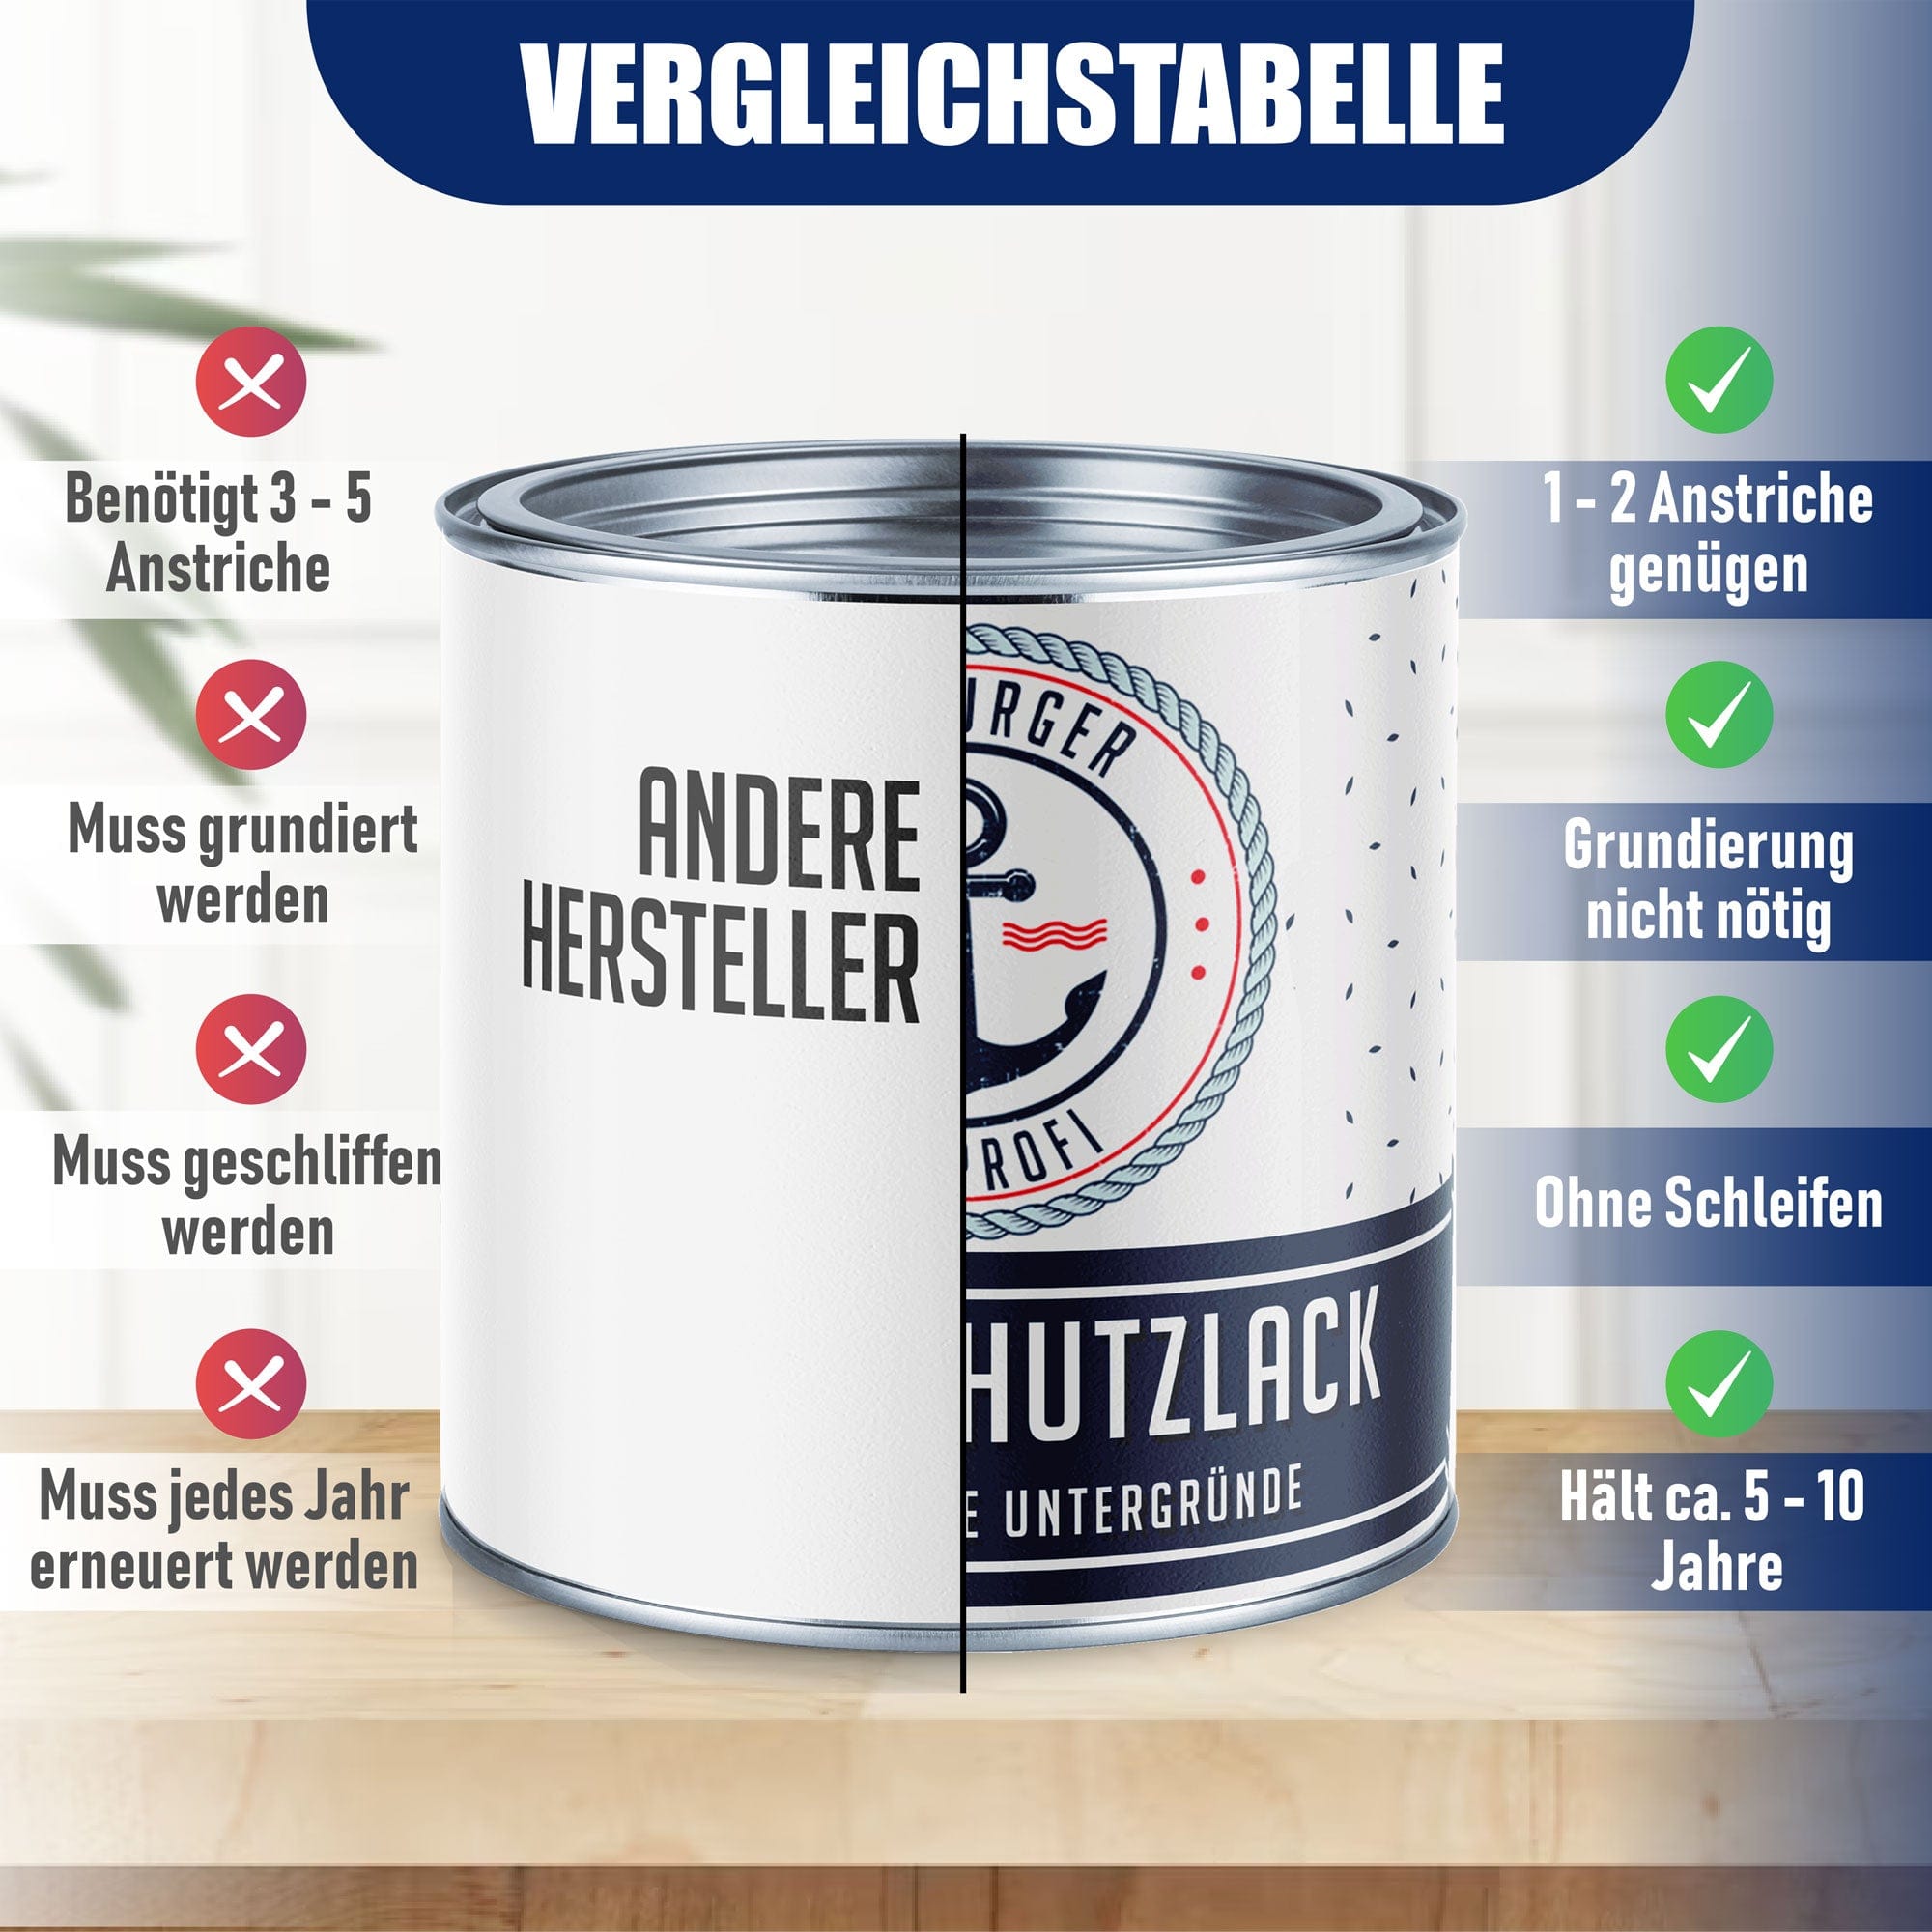 Hamburger Lack-Profi Lacke & Beschichtungen Hamburger Lack-Profi Metallschutzlack mit Lackierset (X300) & Verdünnung (1 L) - 30% Sparangebot